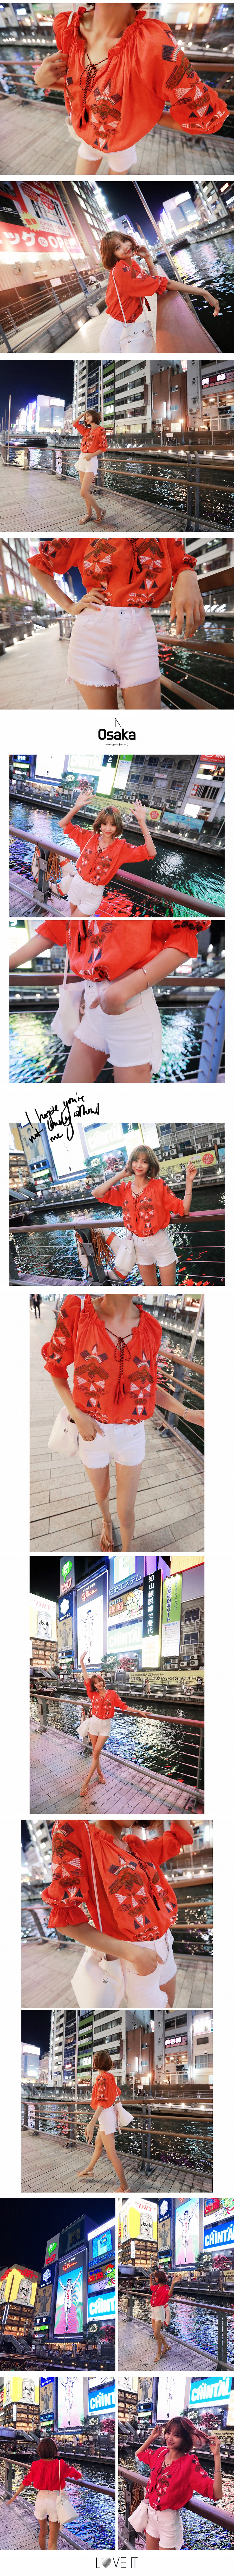 韩国MAGZERO [限量销售] 休闲民族风彩色刺绣荷叶边衬衣 #橘红色 均码(S-M)